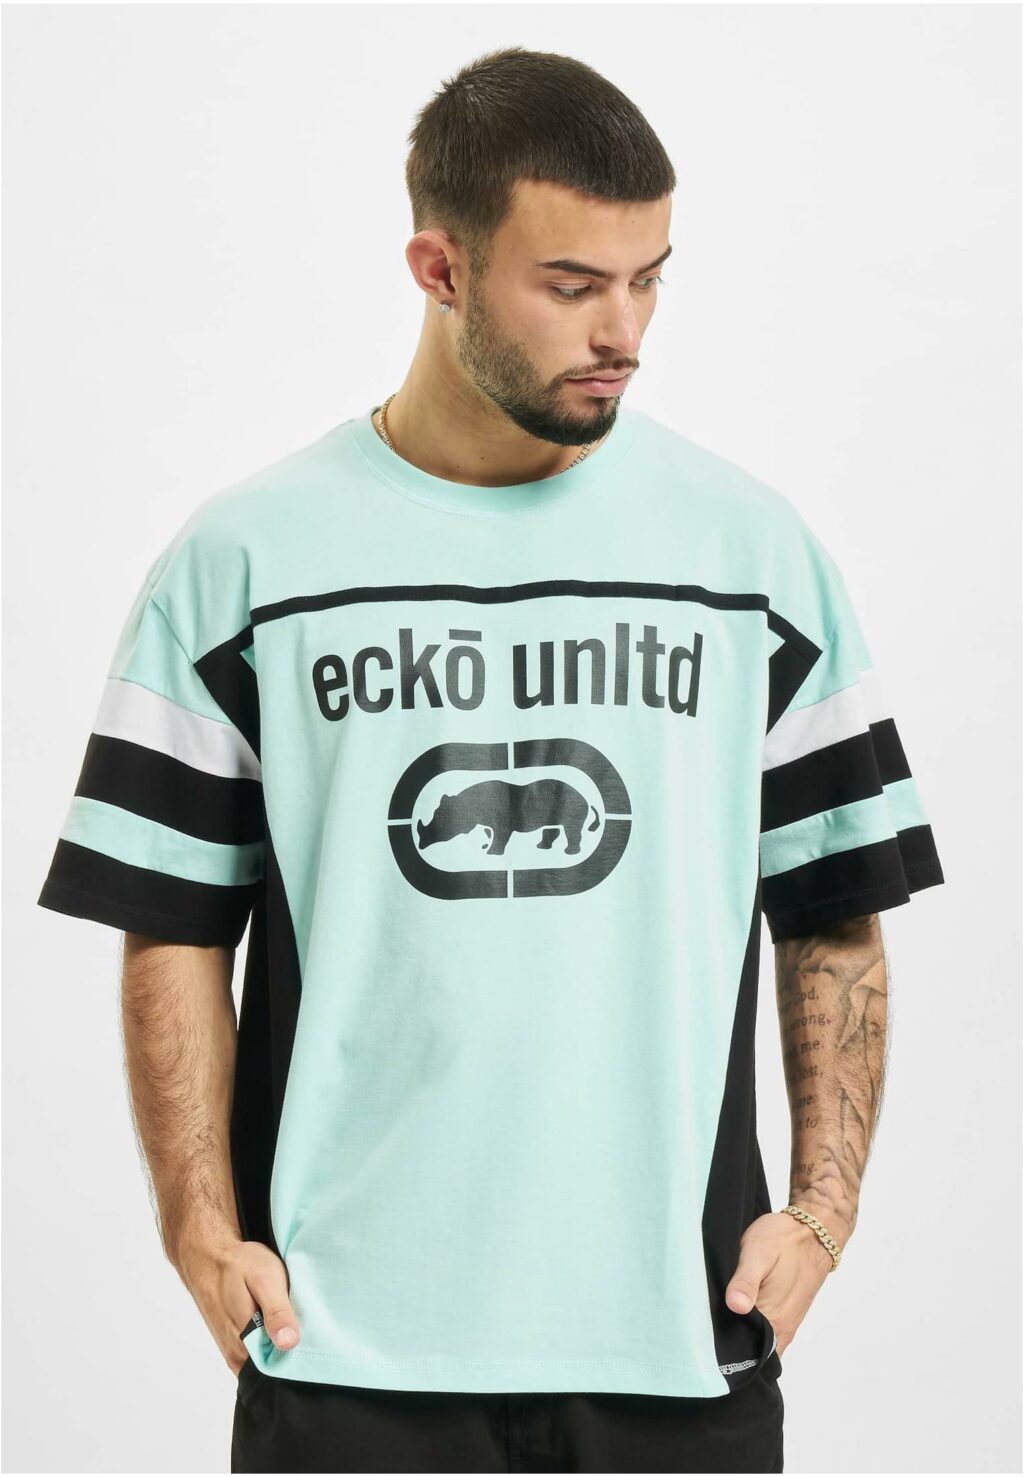 Ecko Unltd. Tike T-Shirts light blue ECKOTS1129